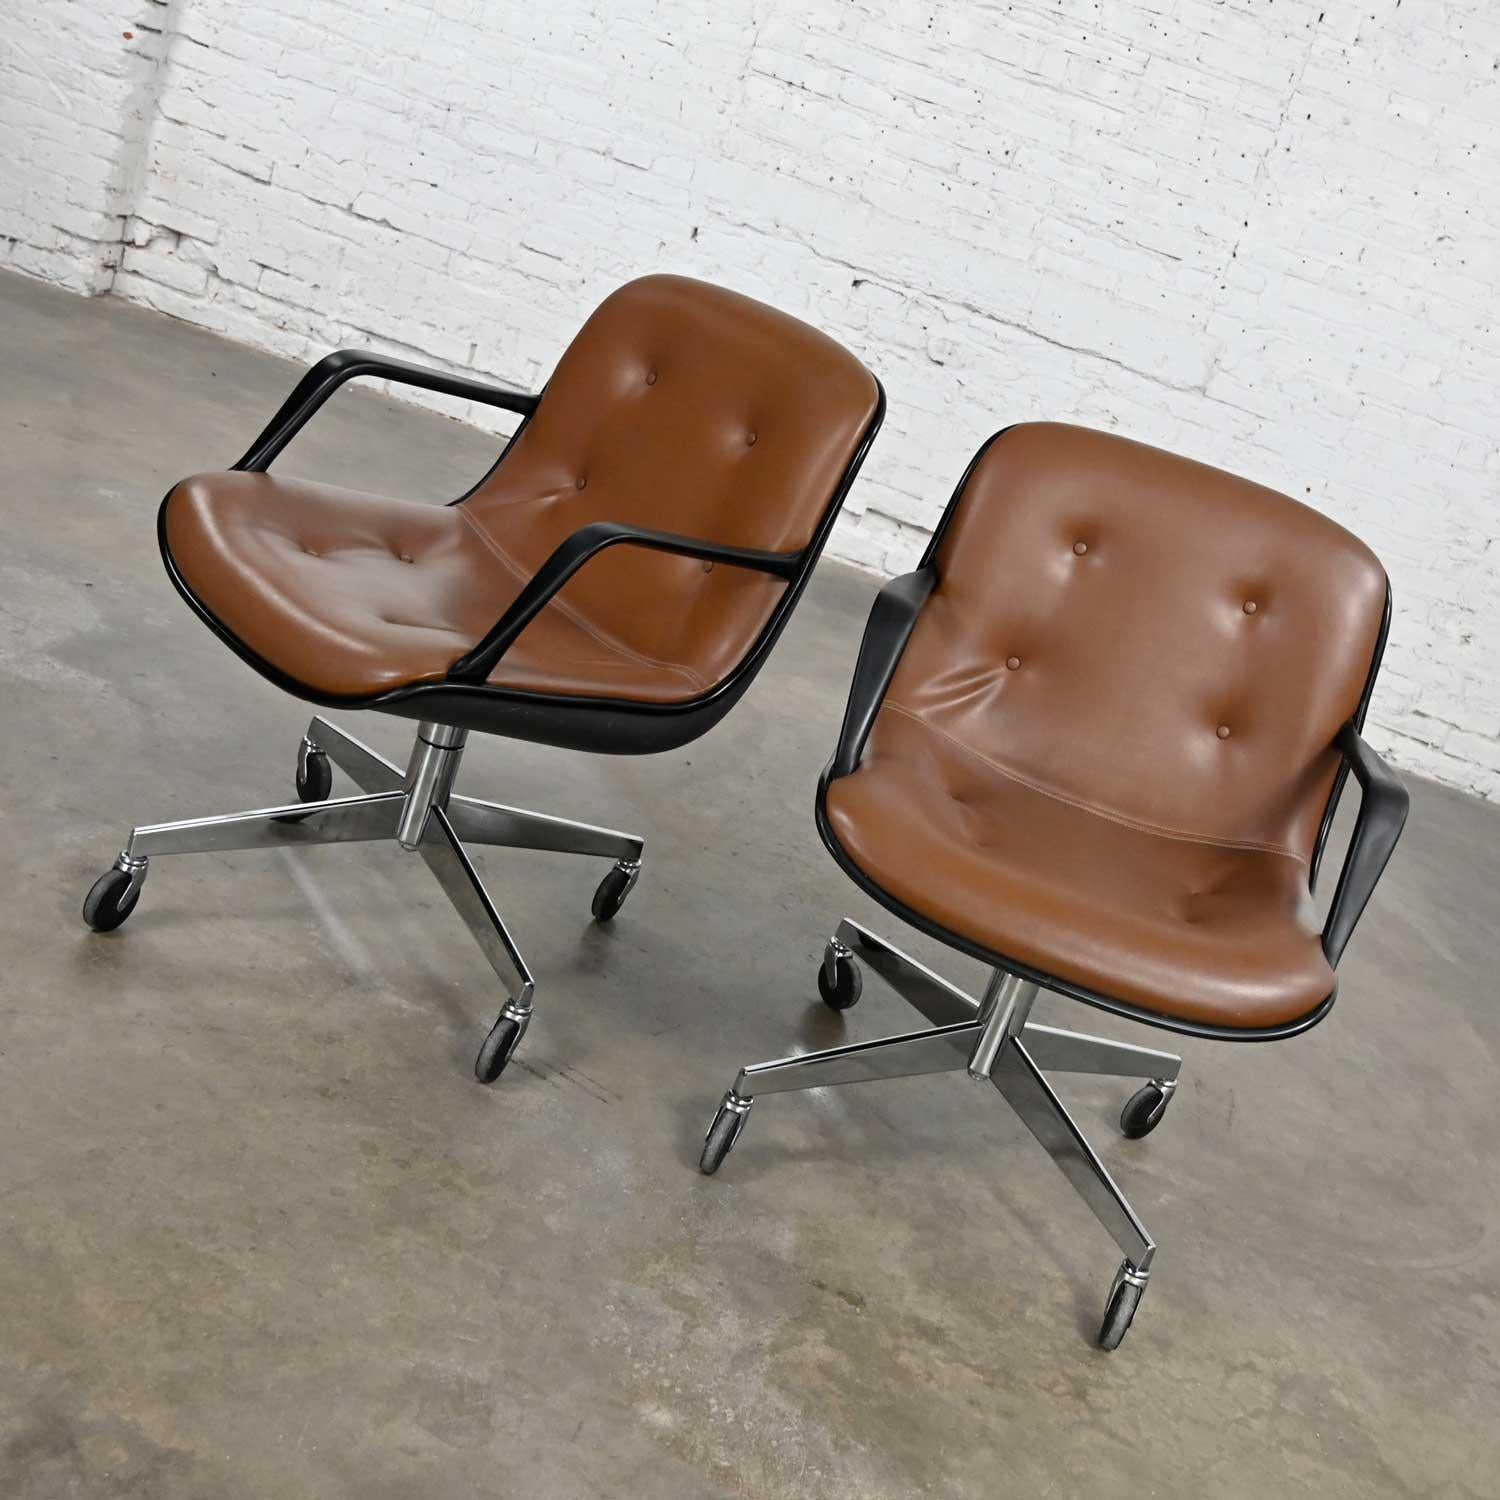 Belle paire de chaises de bureau Steelcase 451 en vinyle marron faux cuir MCM (a.k.a.) Mid-Century Modern avec base à 4 branches sur roulettes dans le style de la chaise de bureau Charles Pollock pour Rolle avec réglage en hauteur, pivotement, et